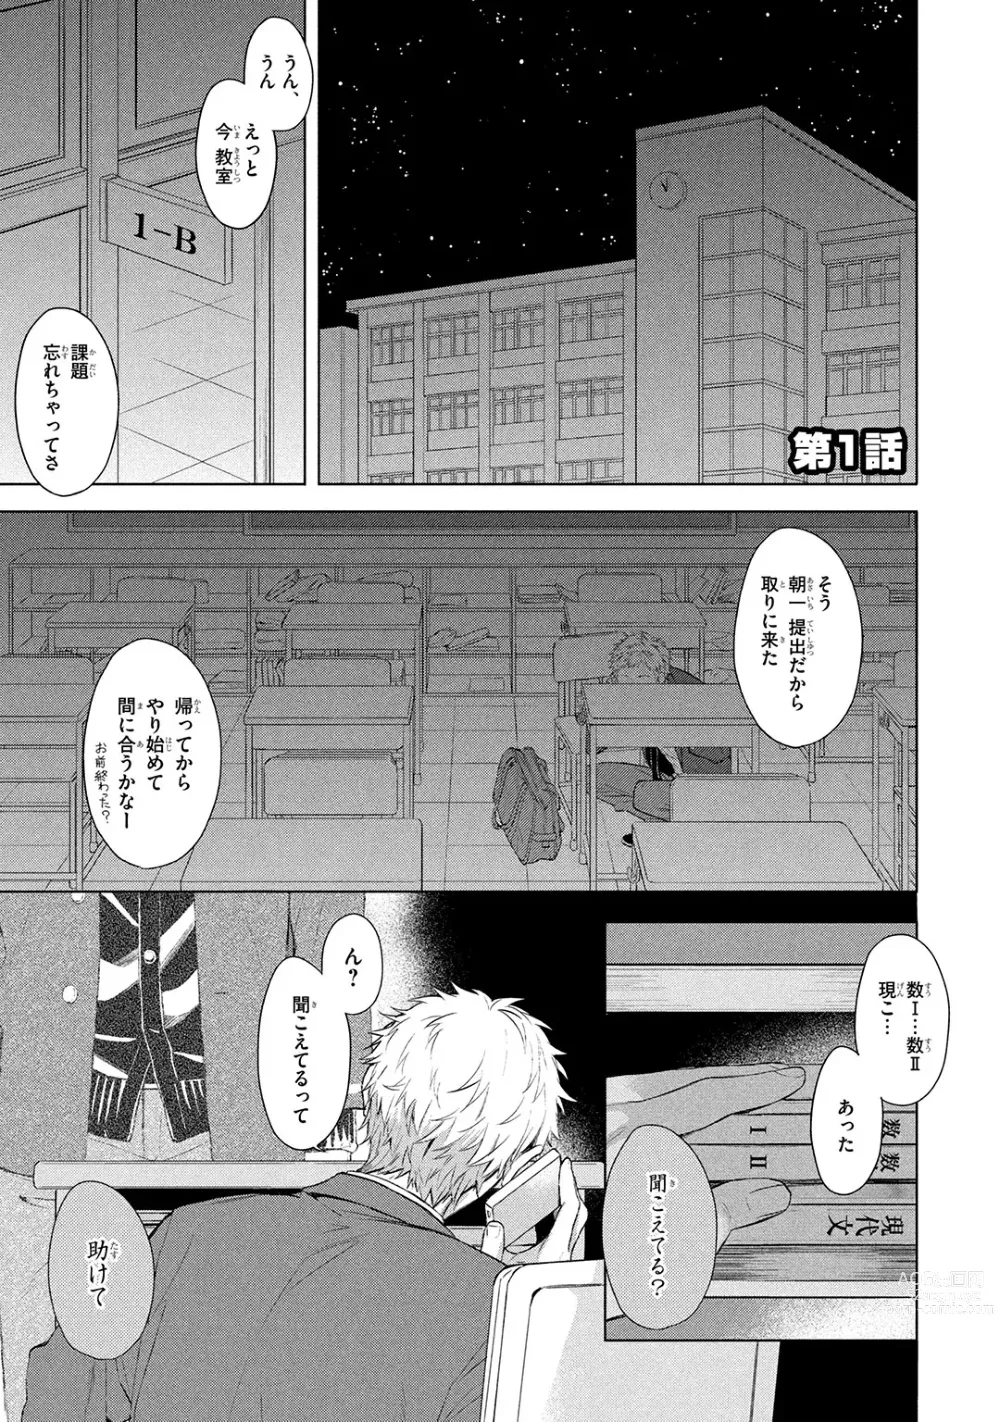 Page 5 of manga Ore dake ga Shitte iru